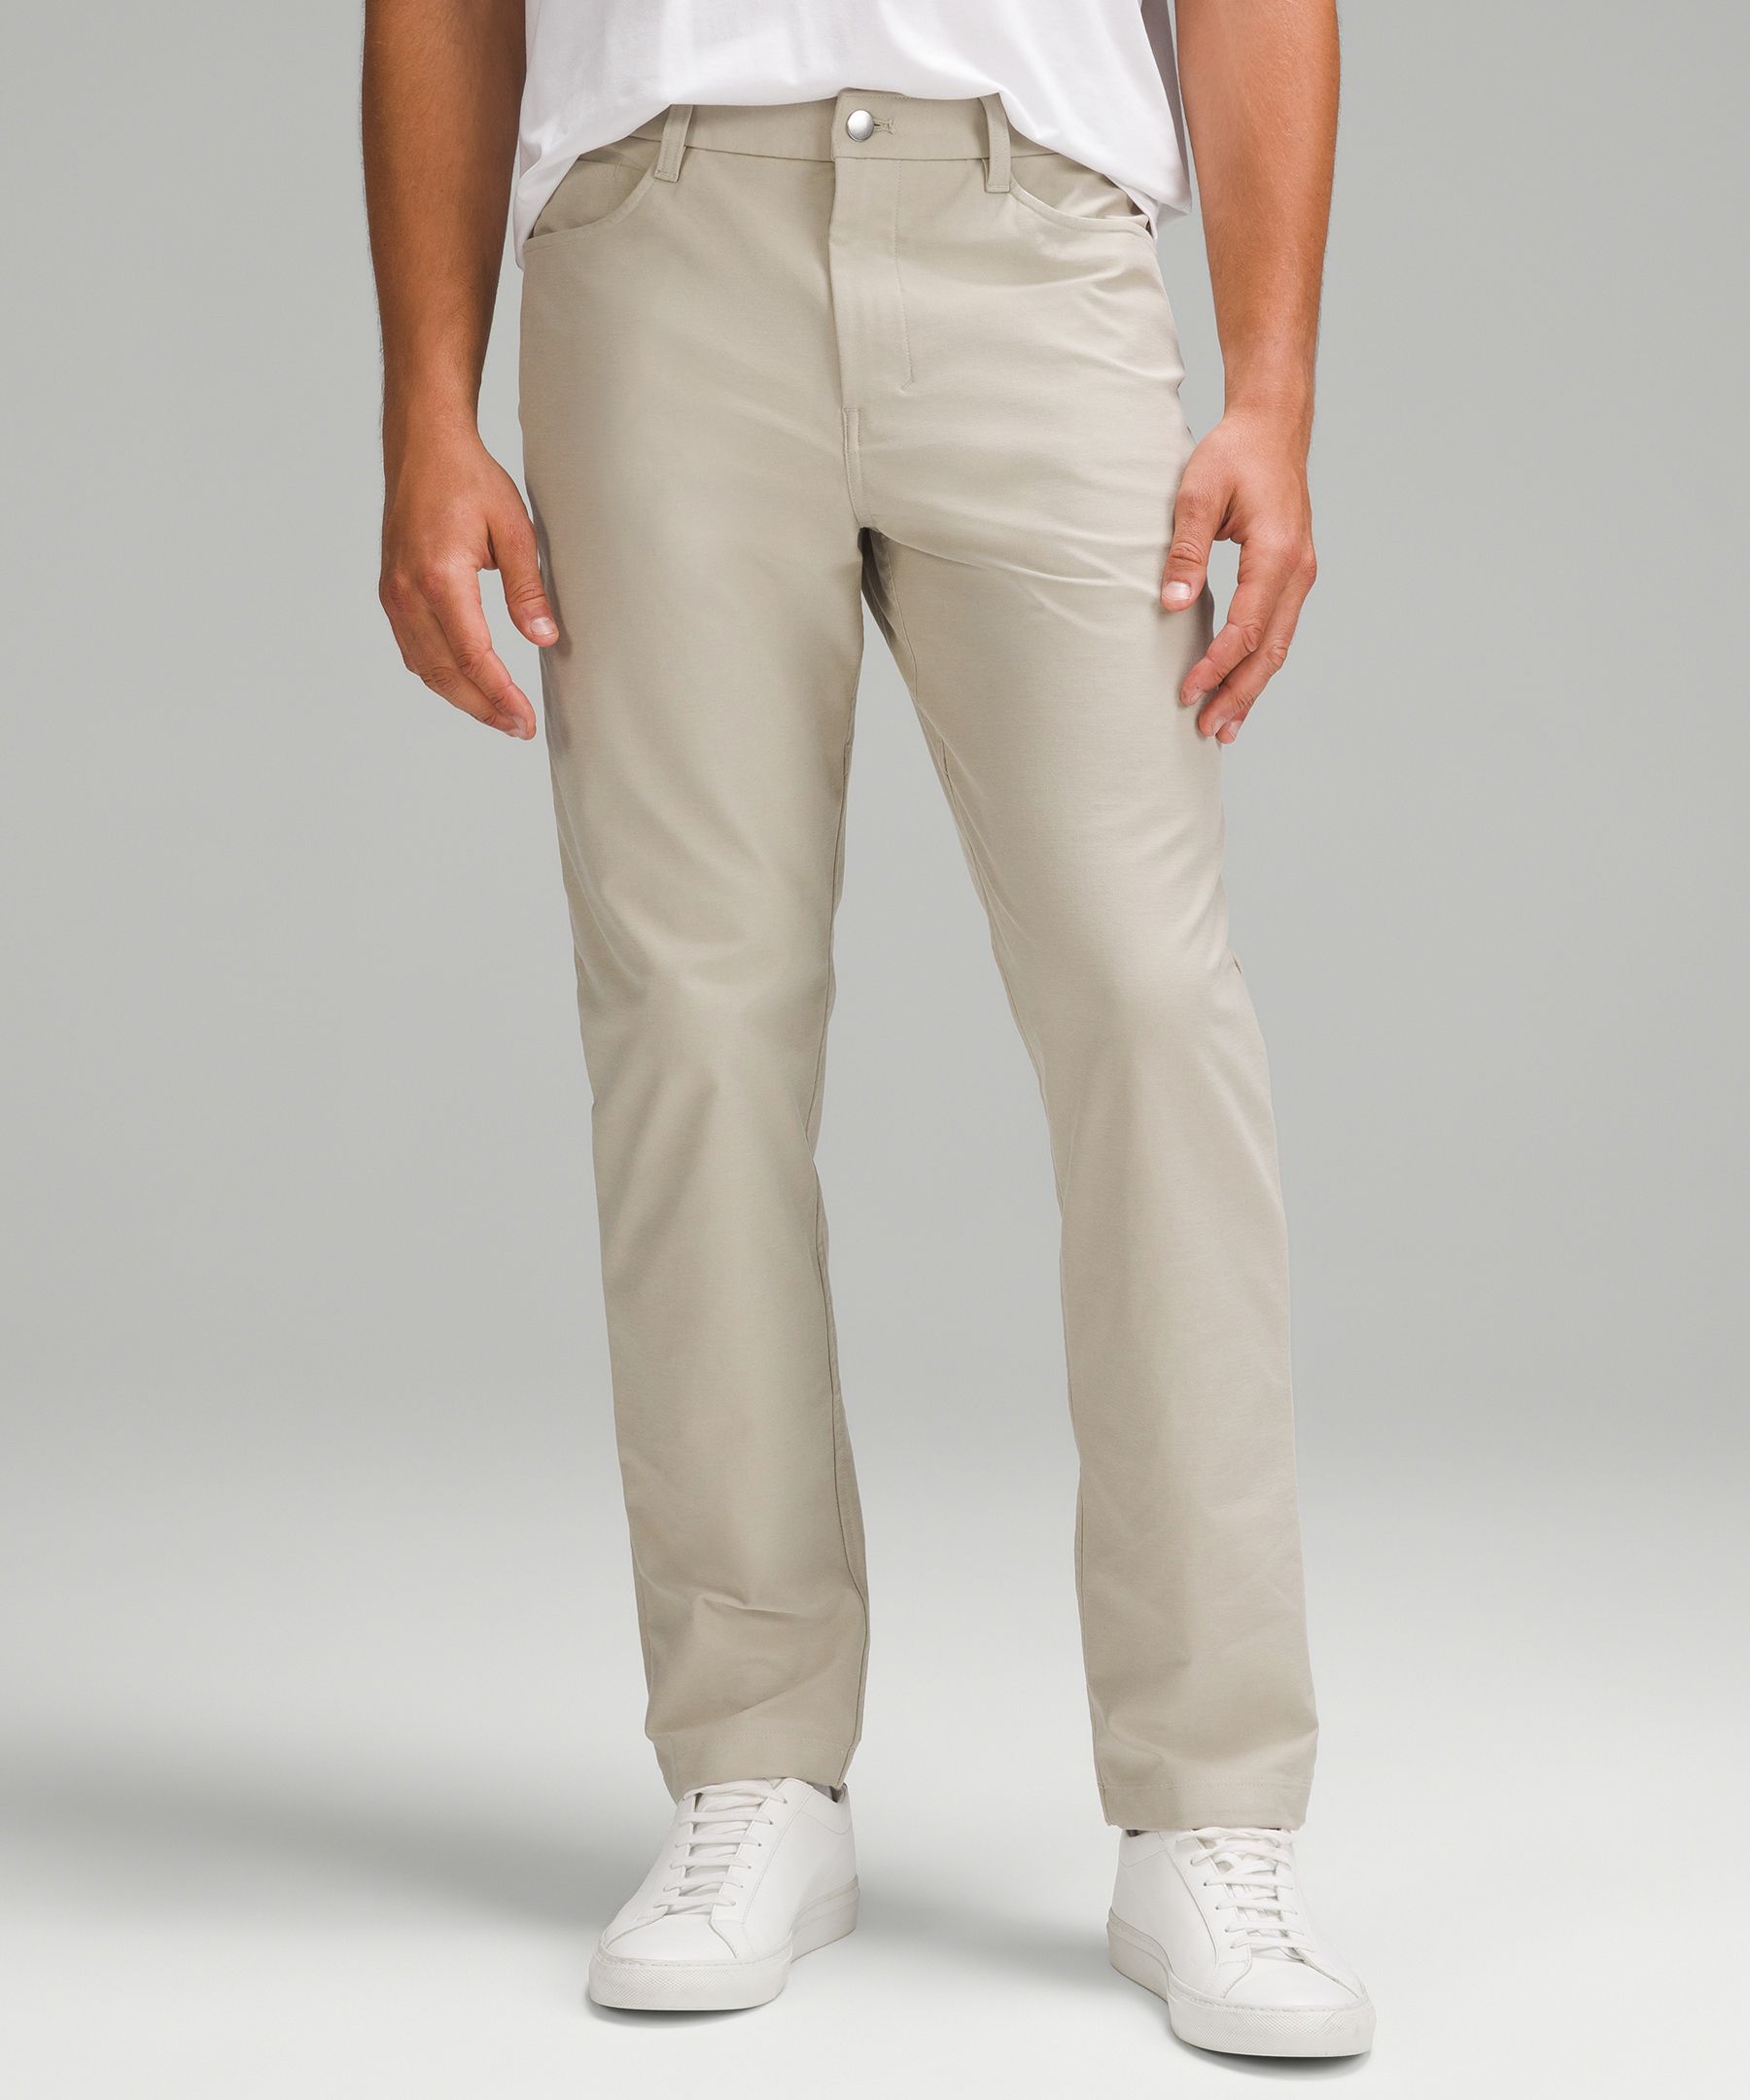 Lululemon athletica ABC Slim-Fit 5 Pocket Pant 32L *Utilitech, Men's  Trousers